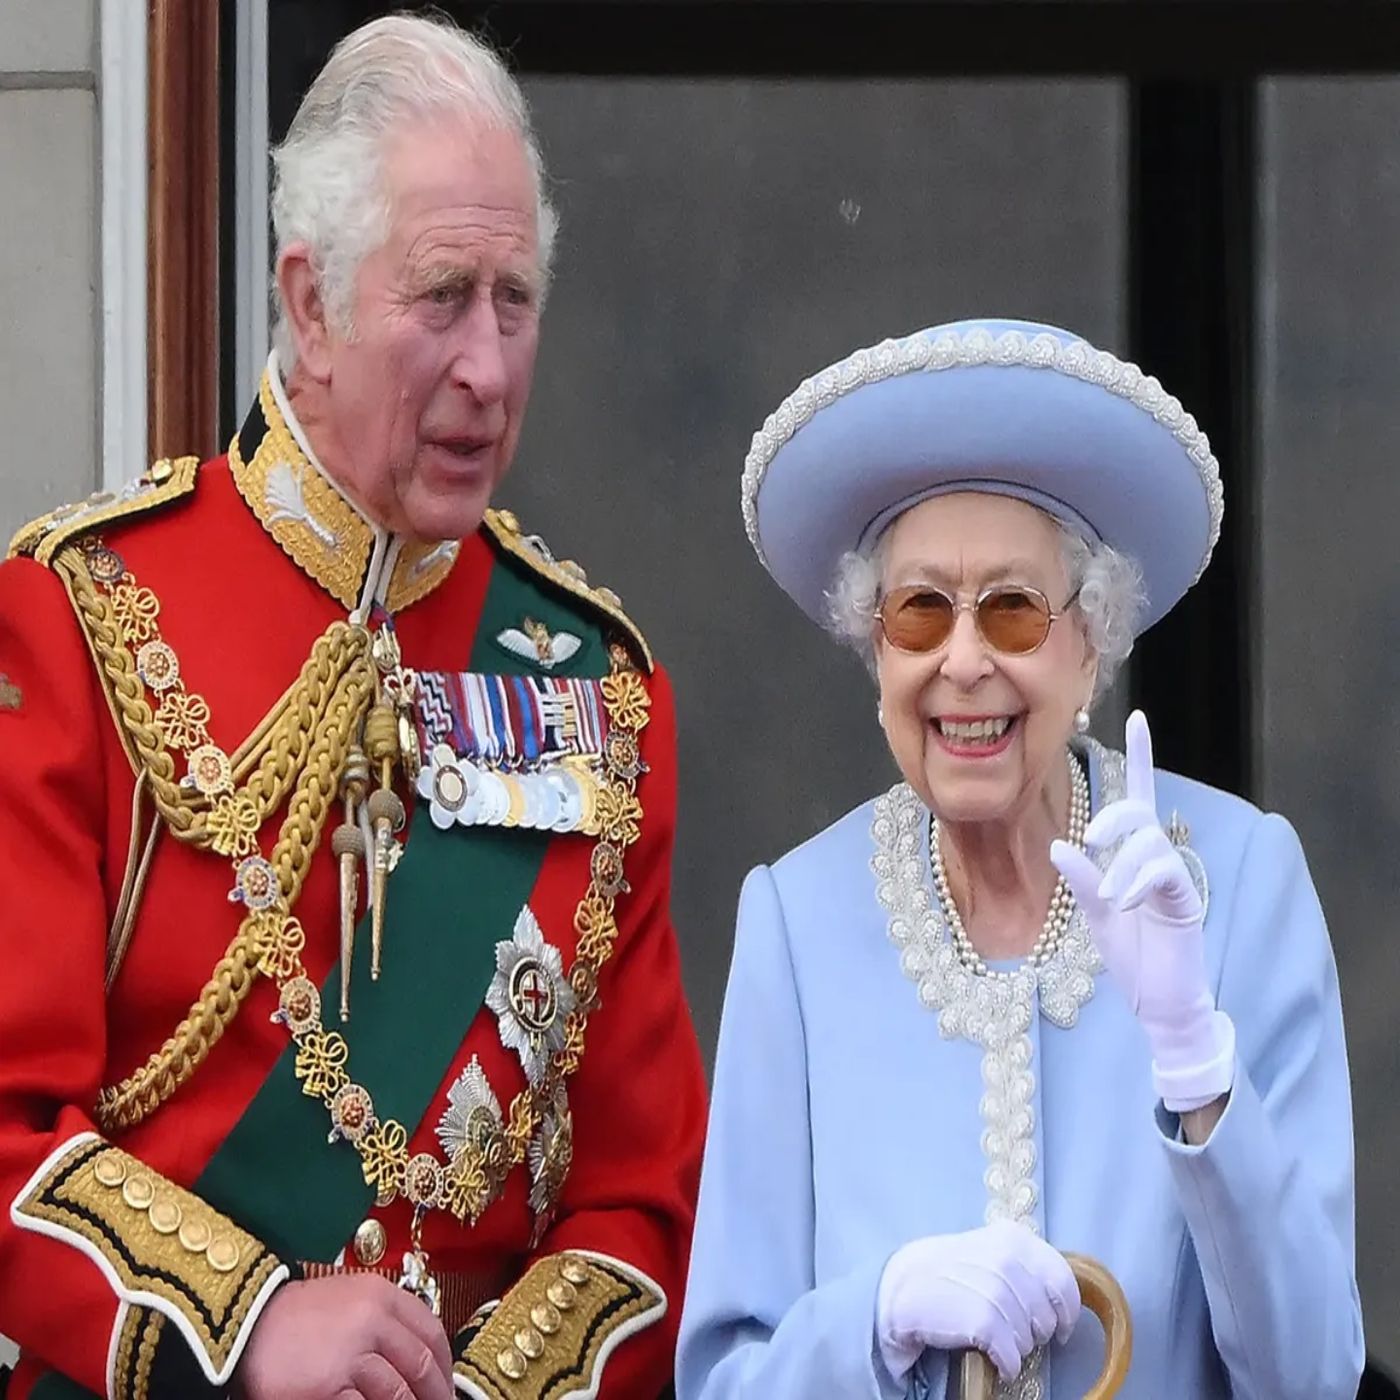 From Queen Elizabeth II to Charles III